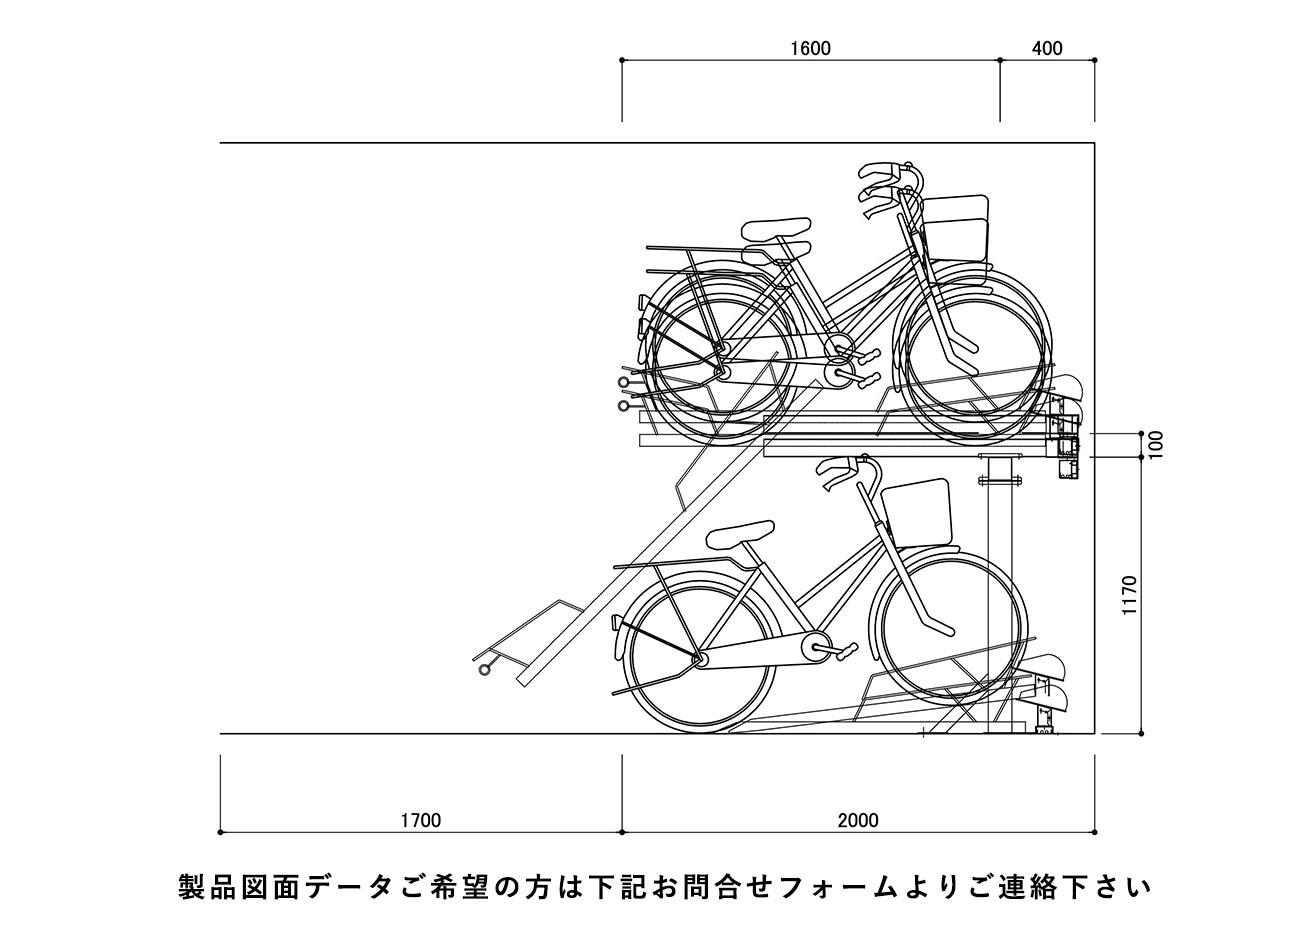 2段式駐輪機：2段式Dロックの駐輪場断面図。